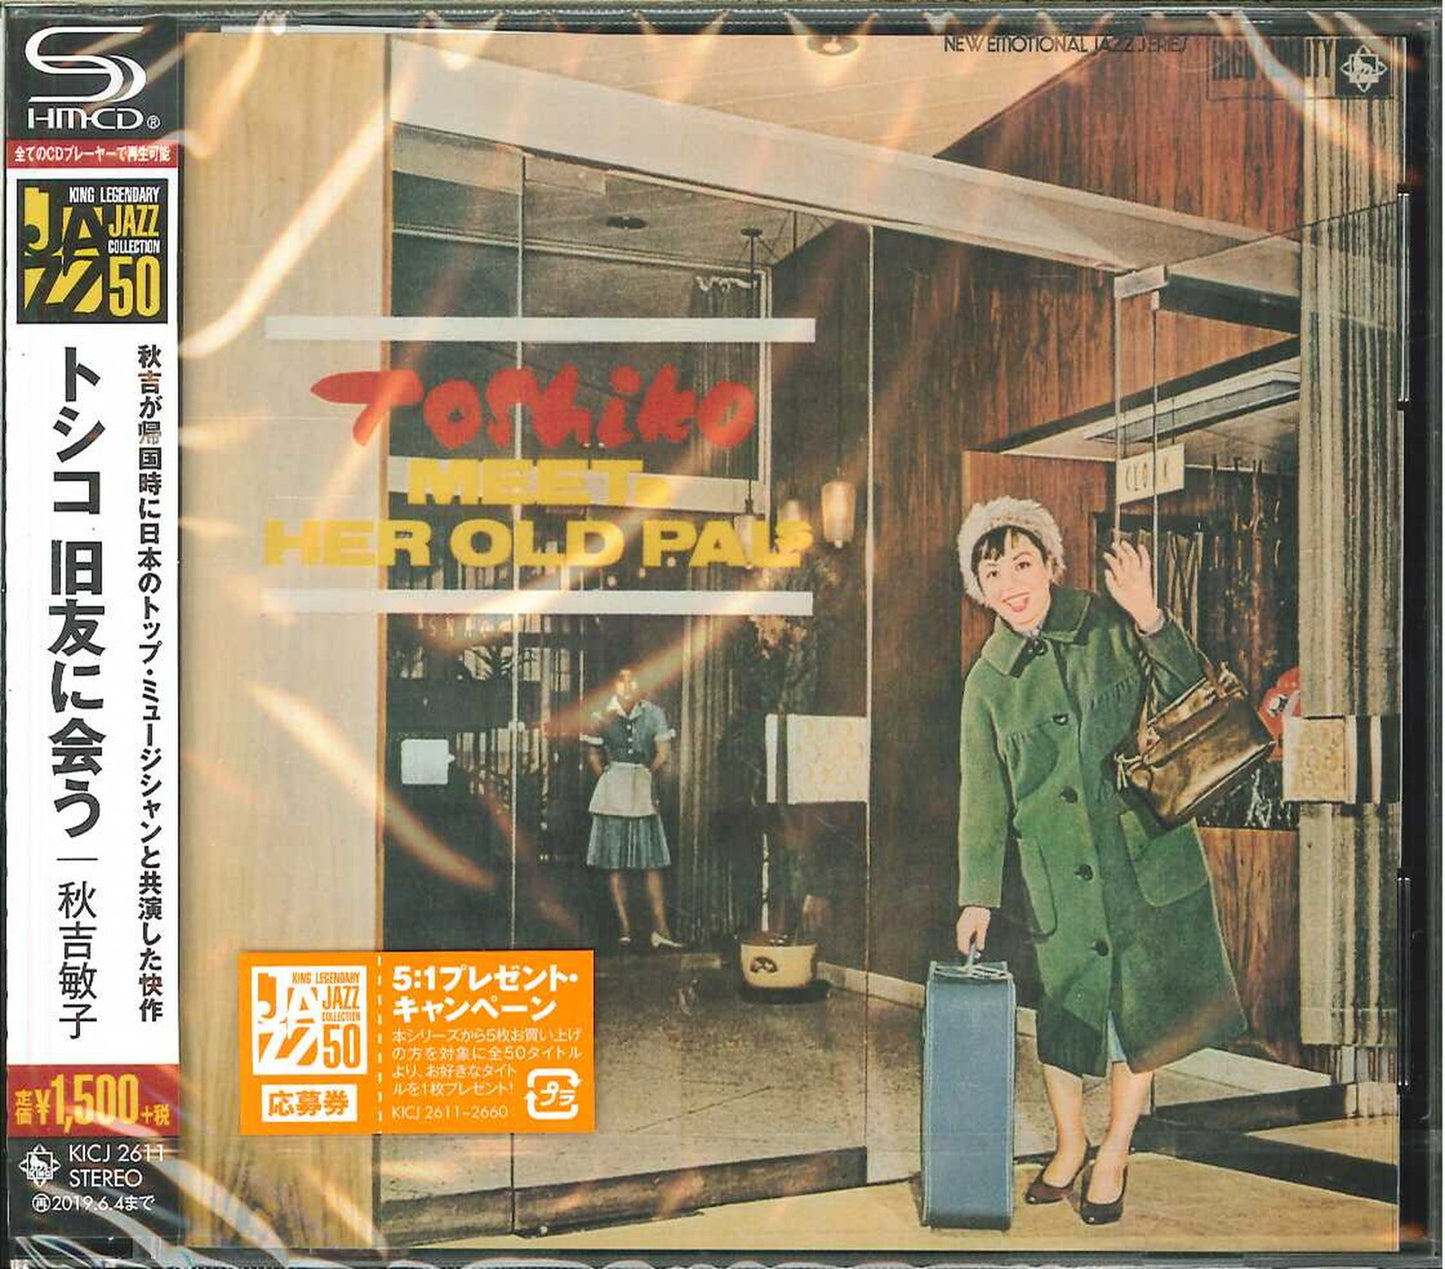 Toshiko Akiyoshi - Toshiko Kyuyu Ni Au - Japan  SHM-CD